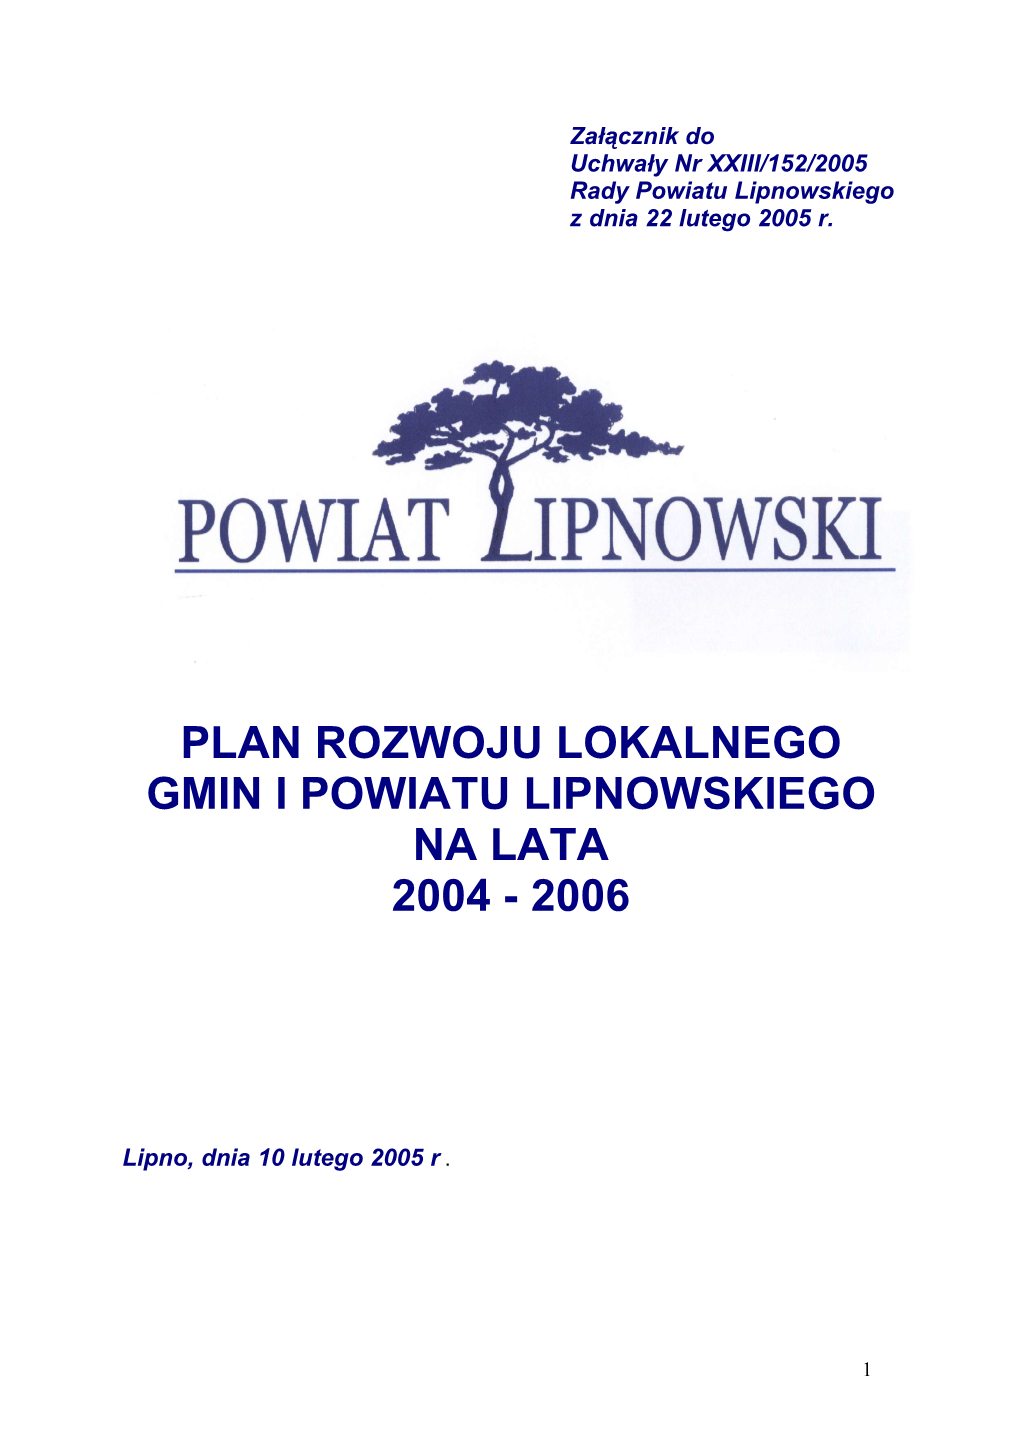 Załącznik Do Uchwały Nr XXIII/152/2005 Rady Powiatu Lipnowskiego Z Dnia 22 Lutego 2005 R